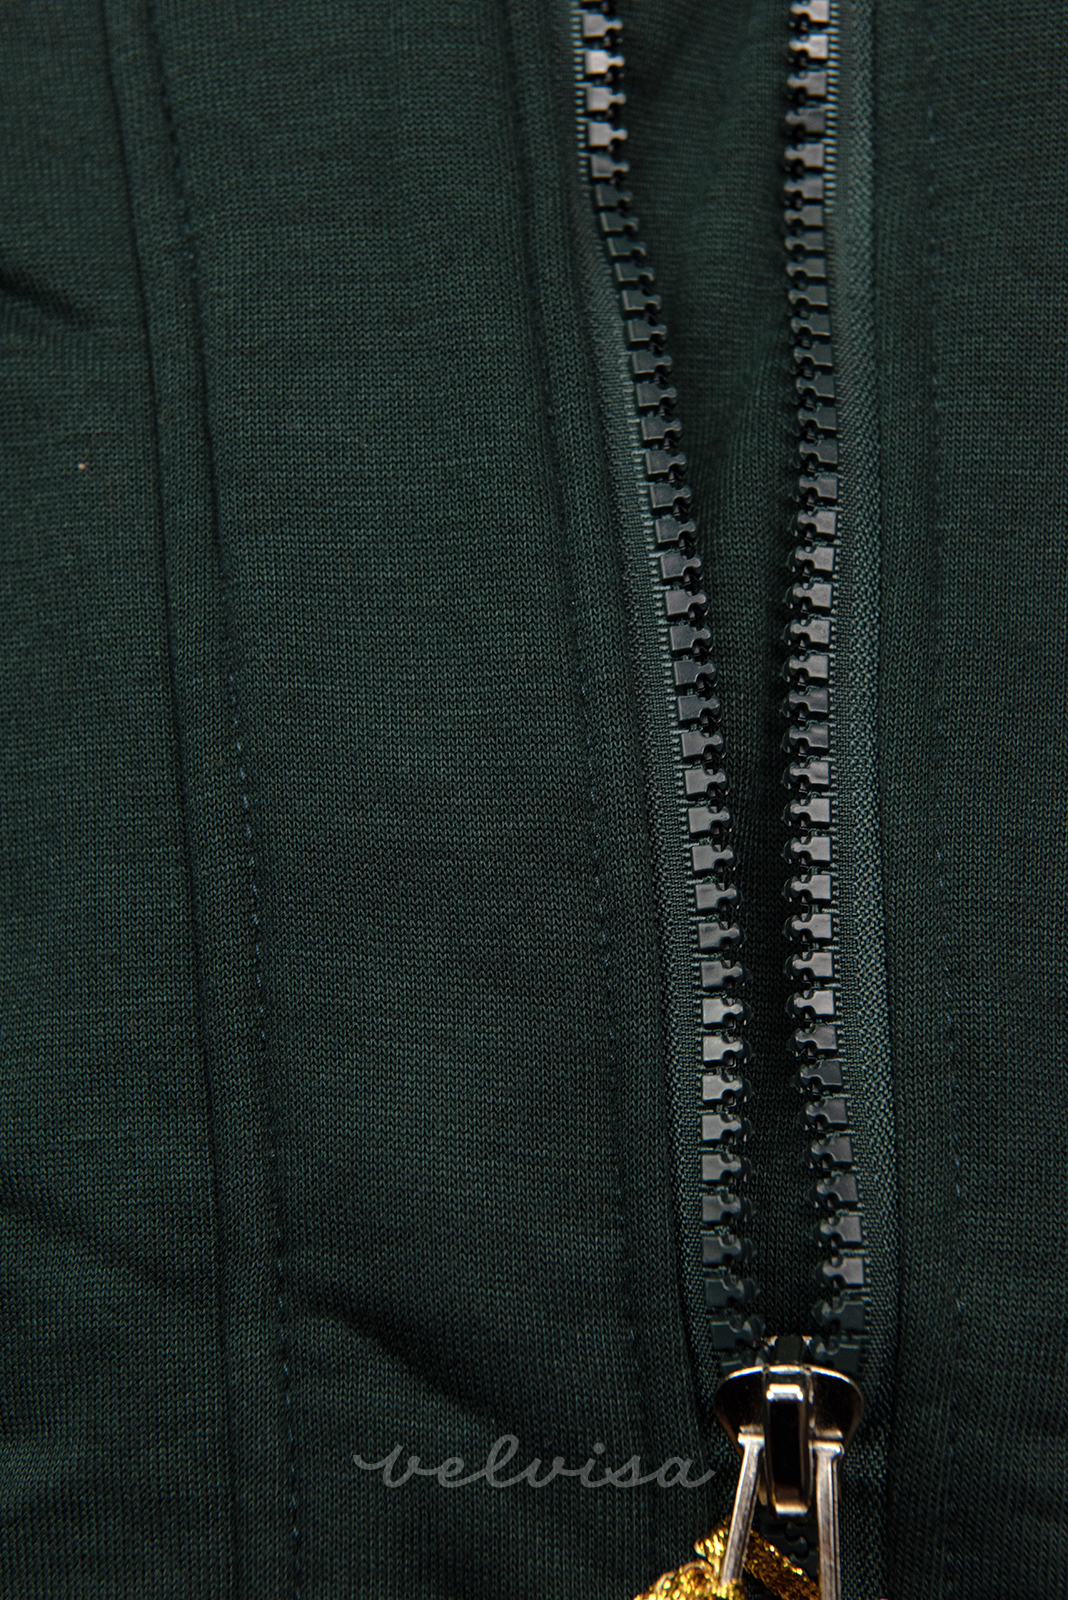 Tamno zelena hoodica asimetričnog kroja